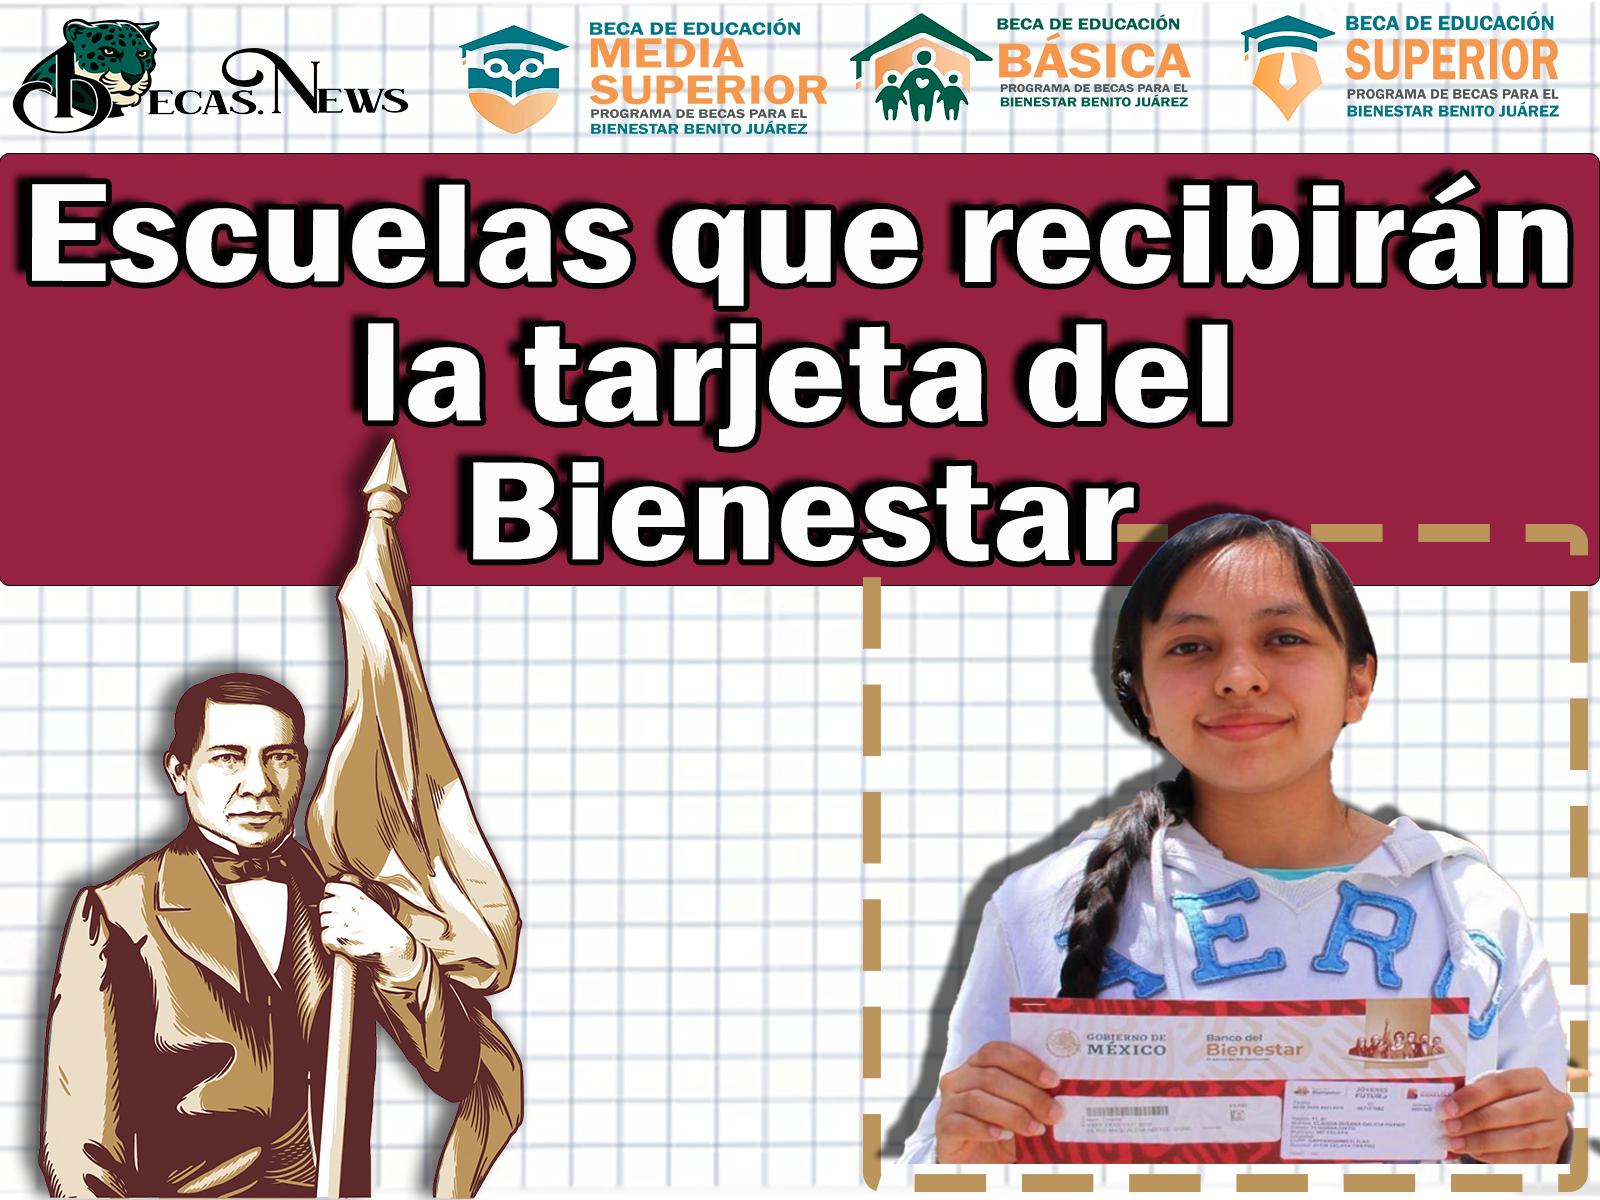 Lista de escuelas que recibirán la tarjeta del Bienestar los días 15 al 17 de junio | Becas Benito Juárez 